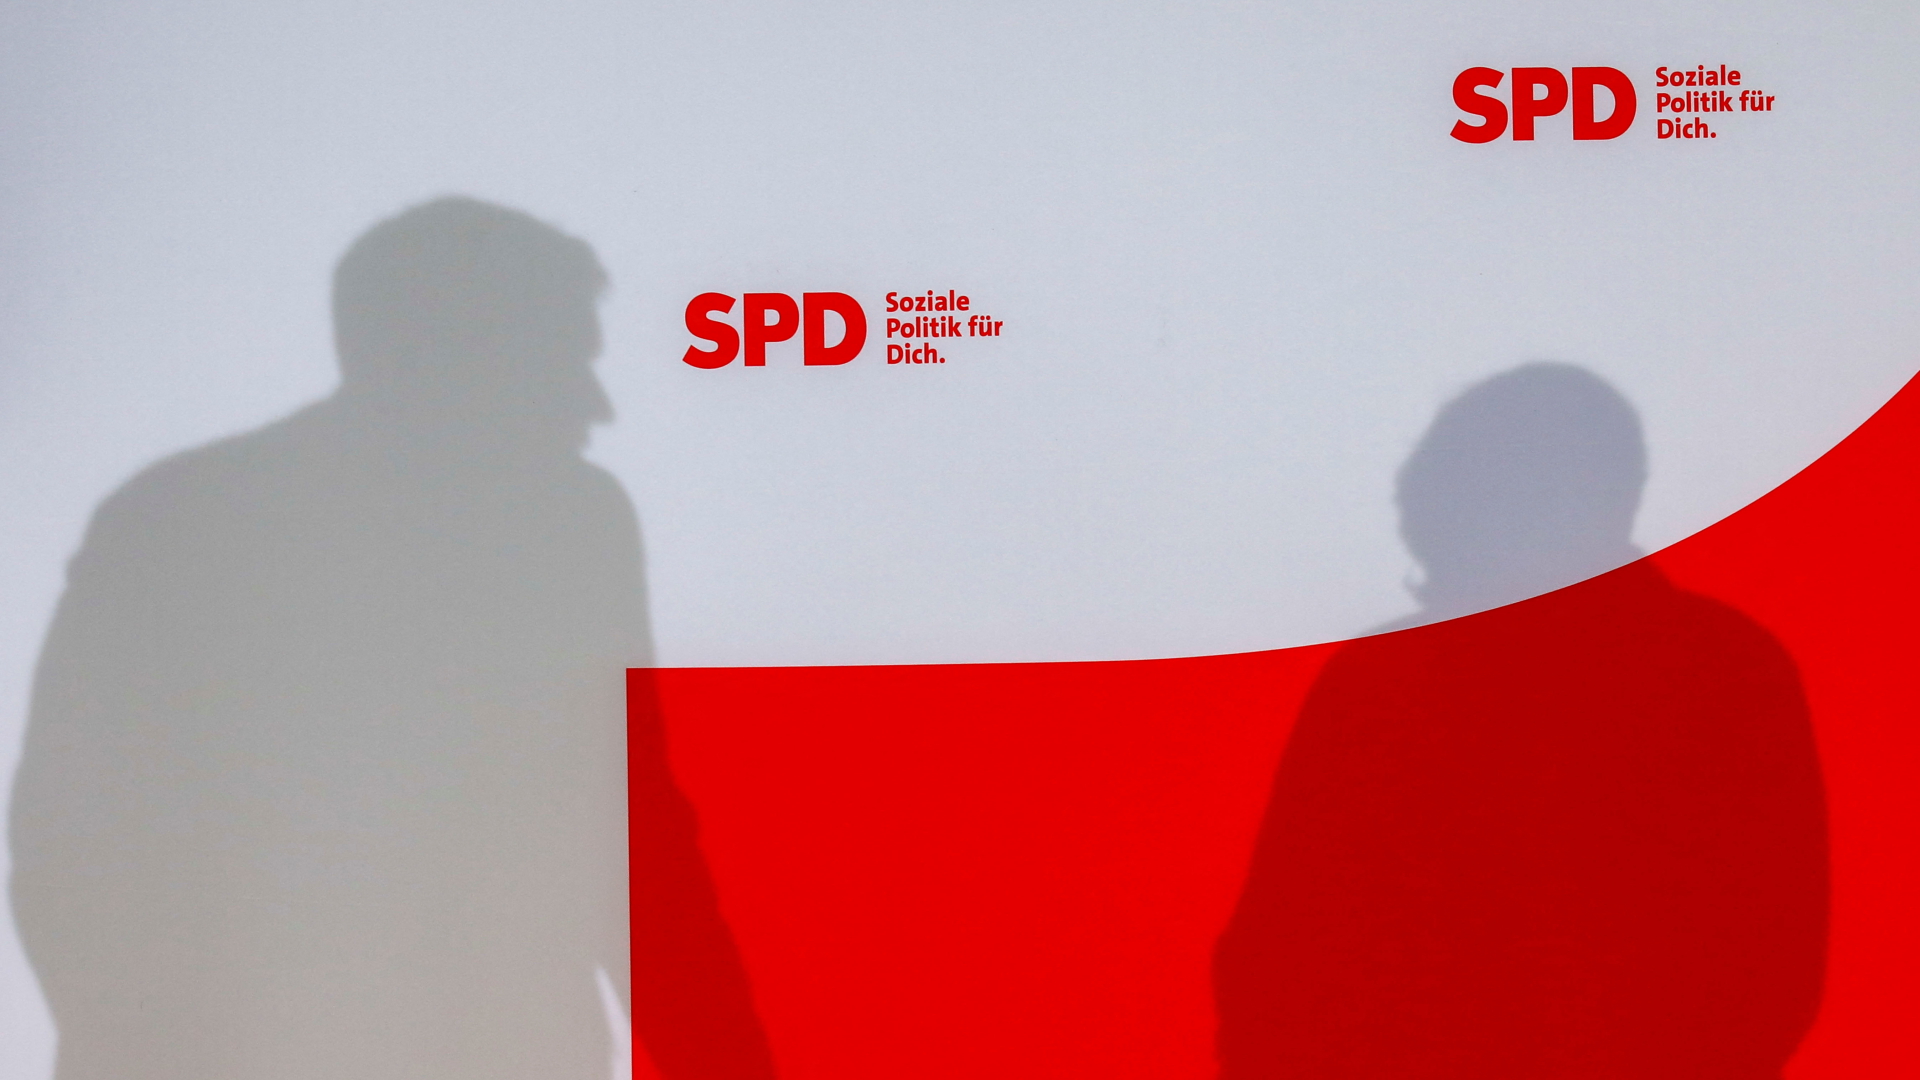 Die Schatten von Lars Klingbeil und Saskia Esken. | REUTERS